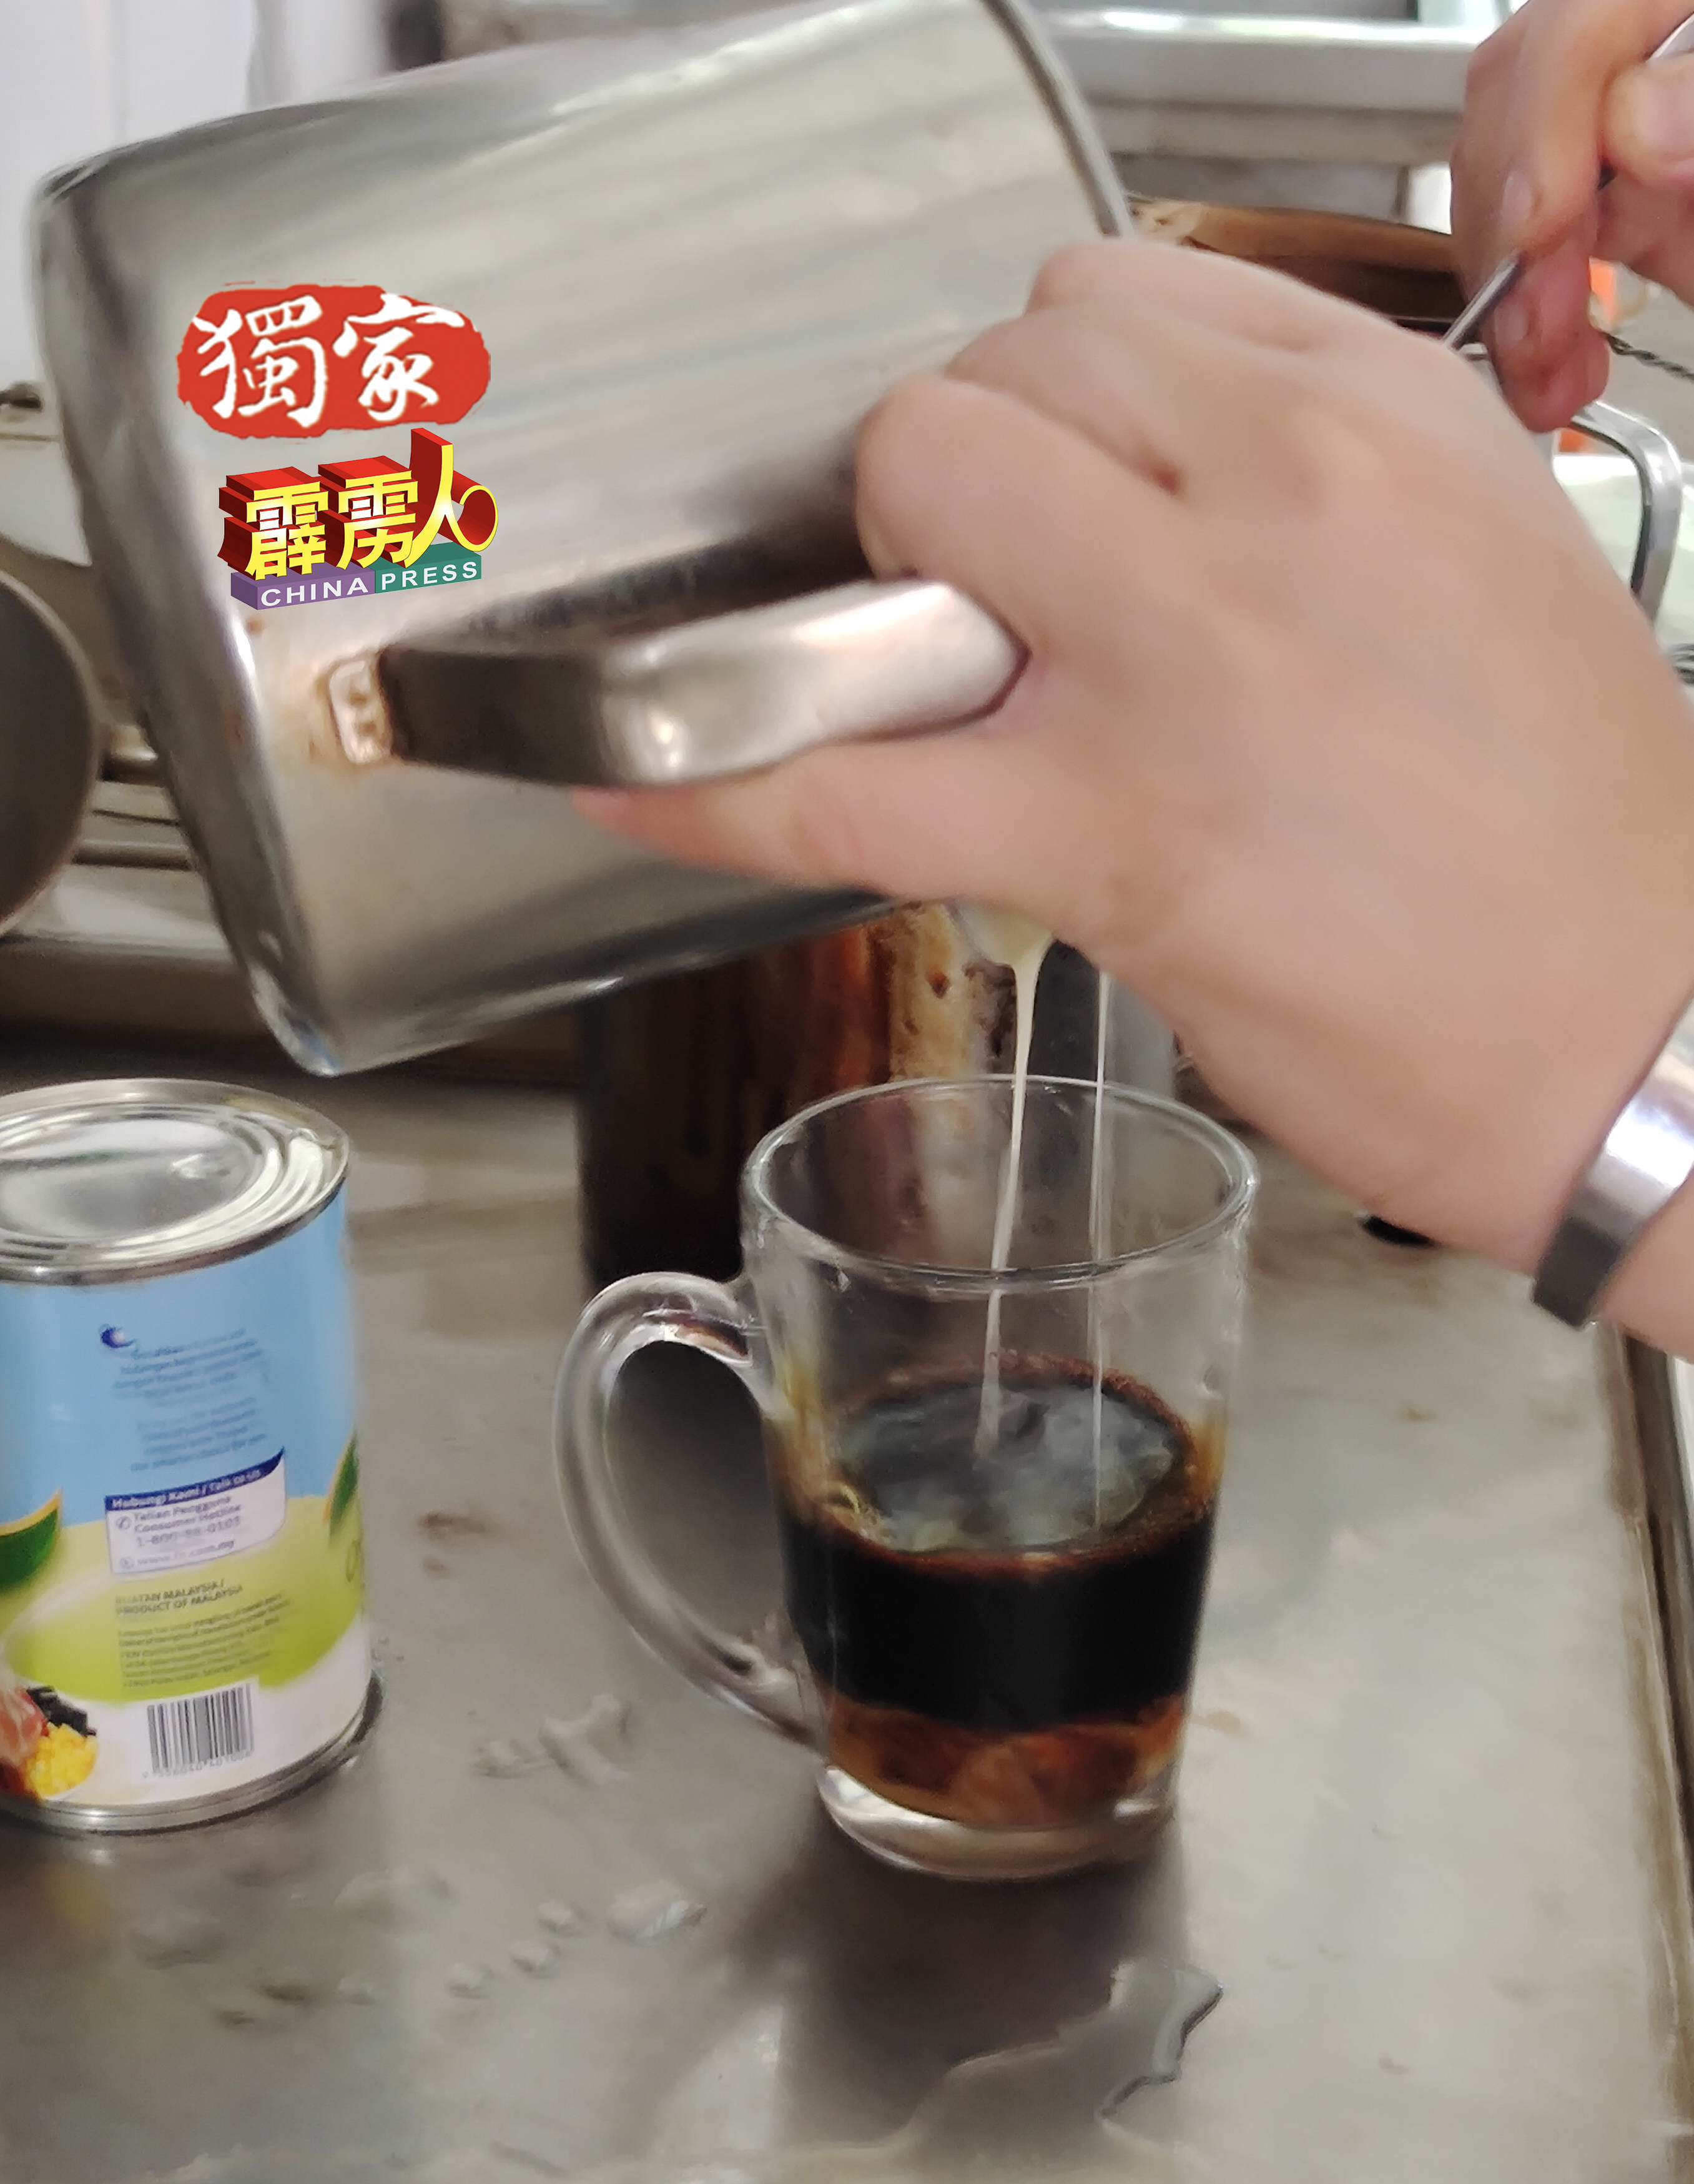 泡茶最常用的炼奶与淡奶，这一年多来每箱各涨10至逾20令吉，如今都是业者自行吸纳成本涨幅，有苦自知。